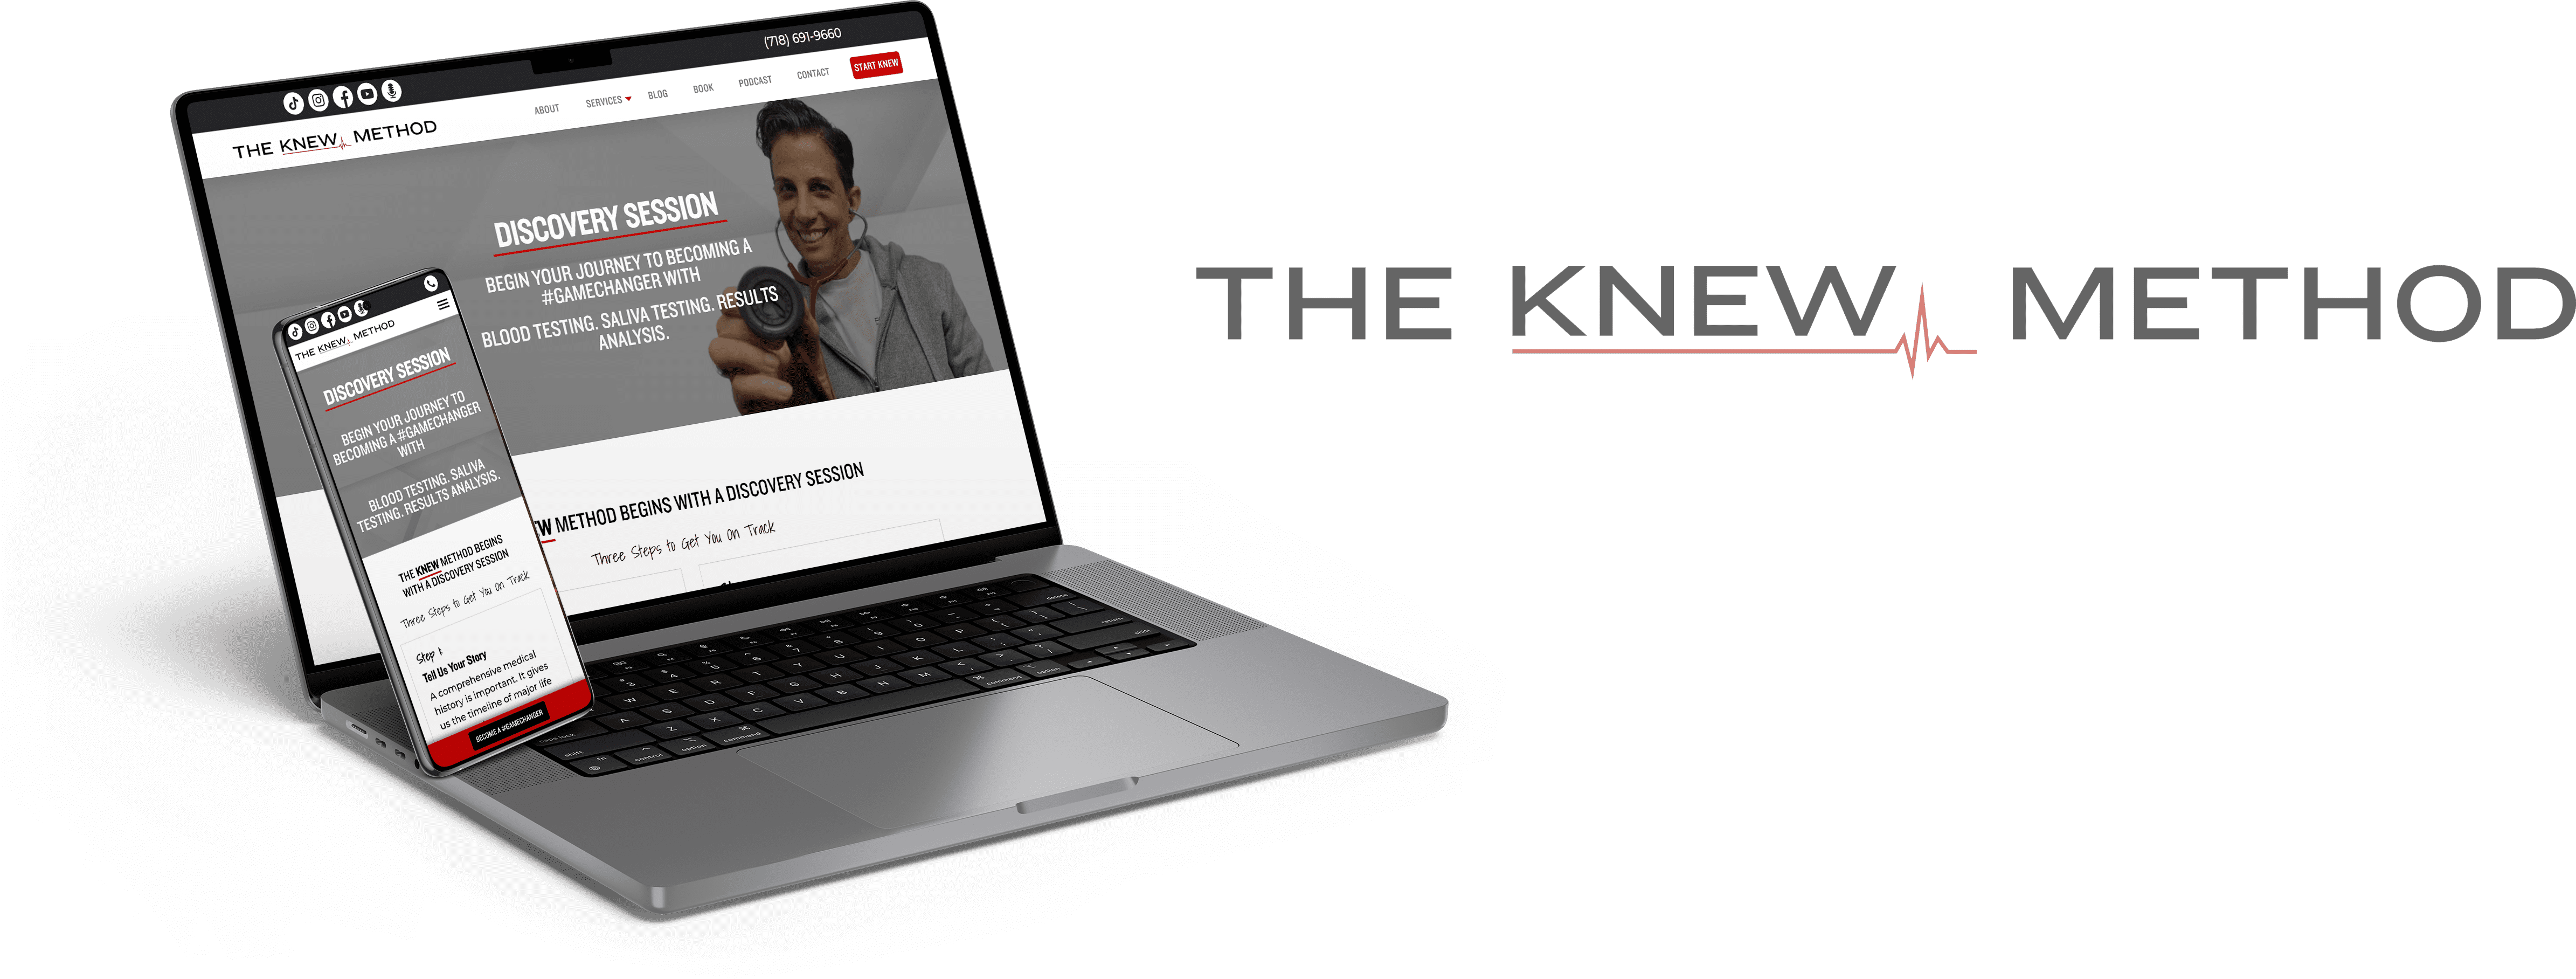 The KNEW Method